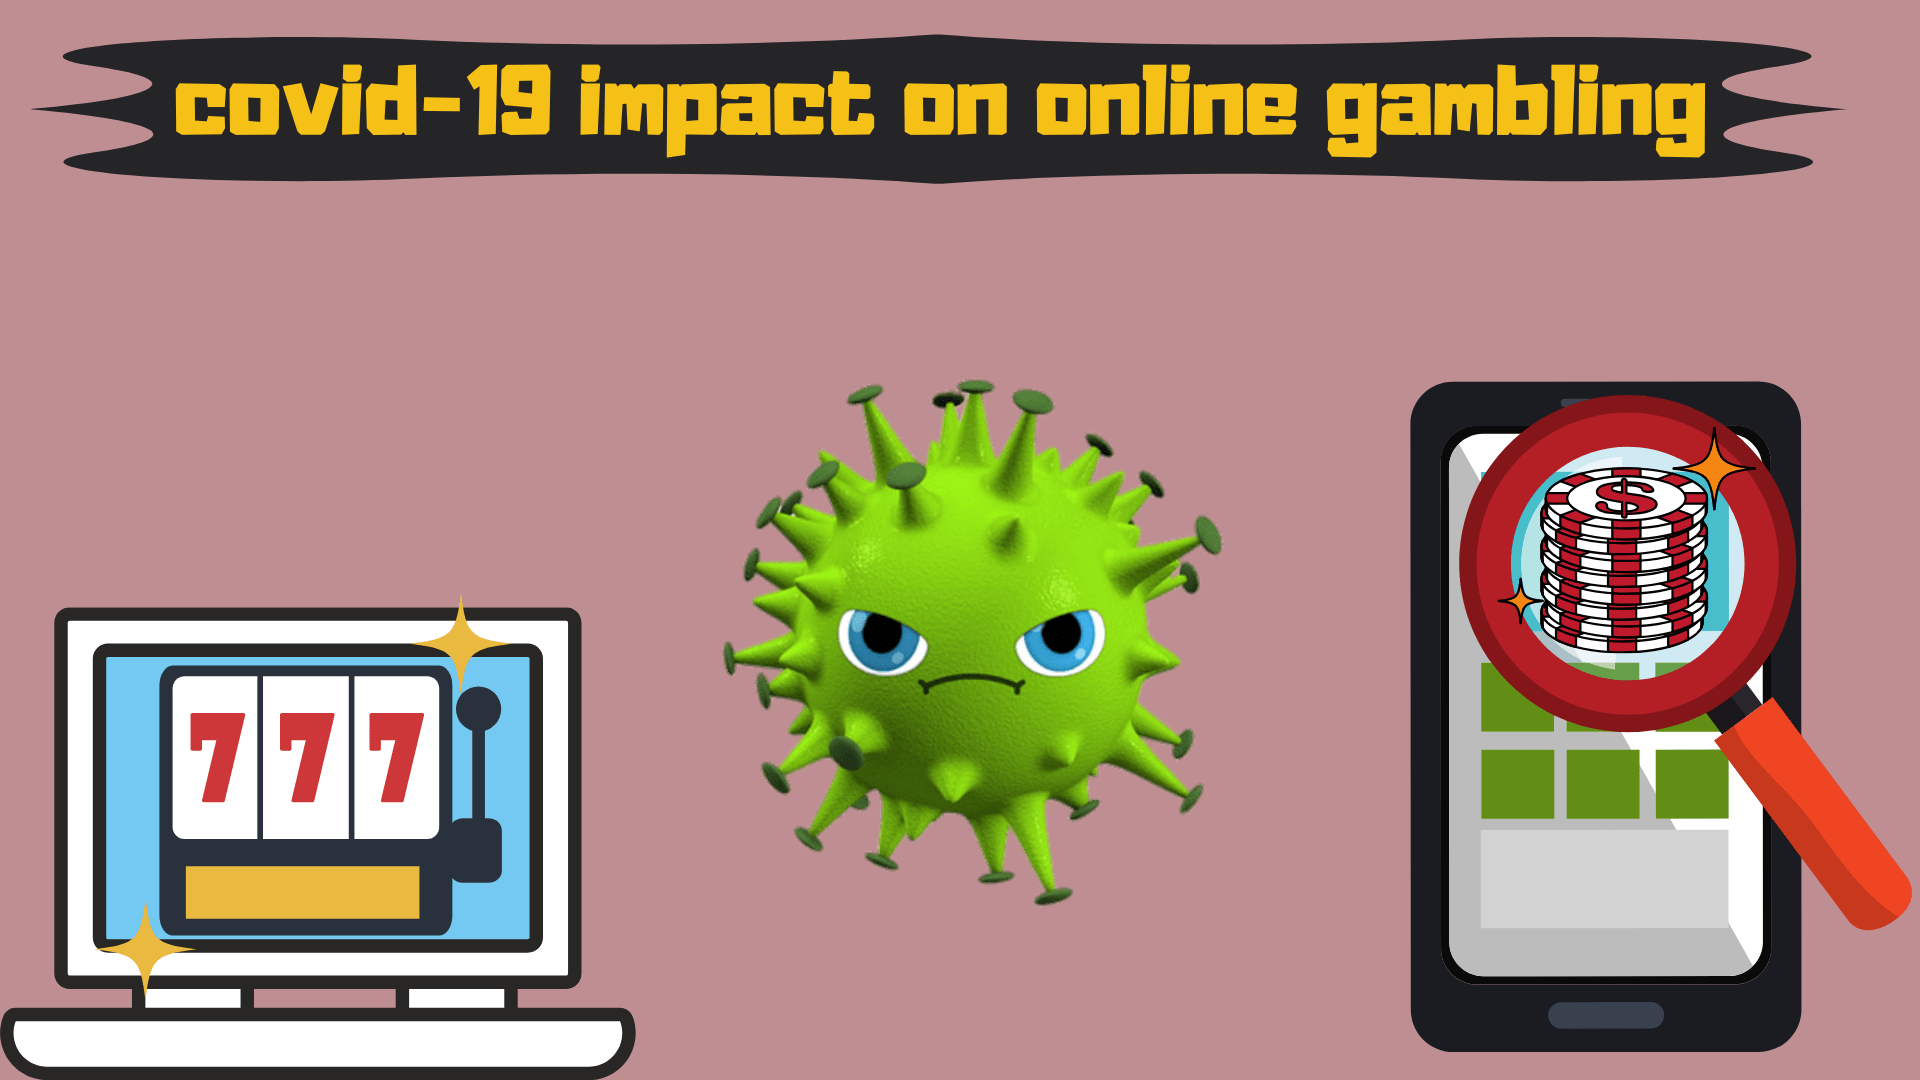 Coronavirus Impact On Online Gambling